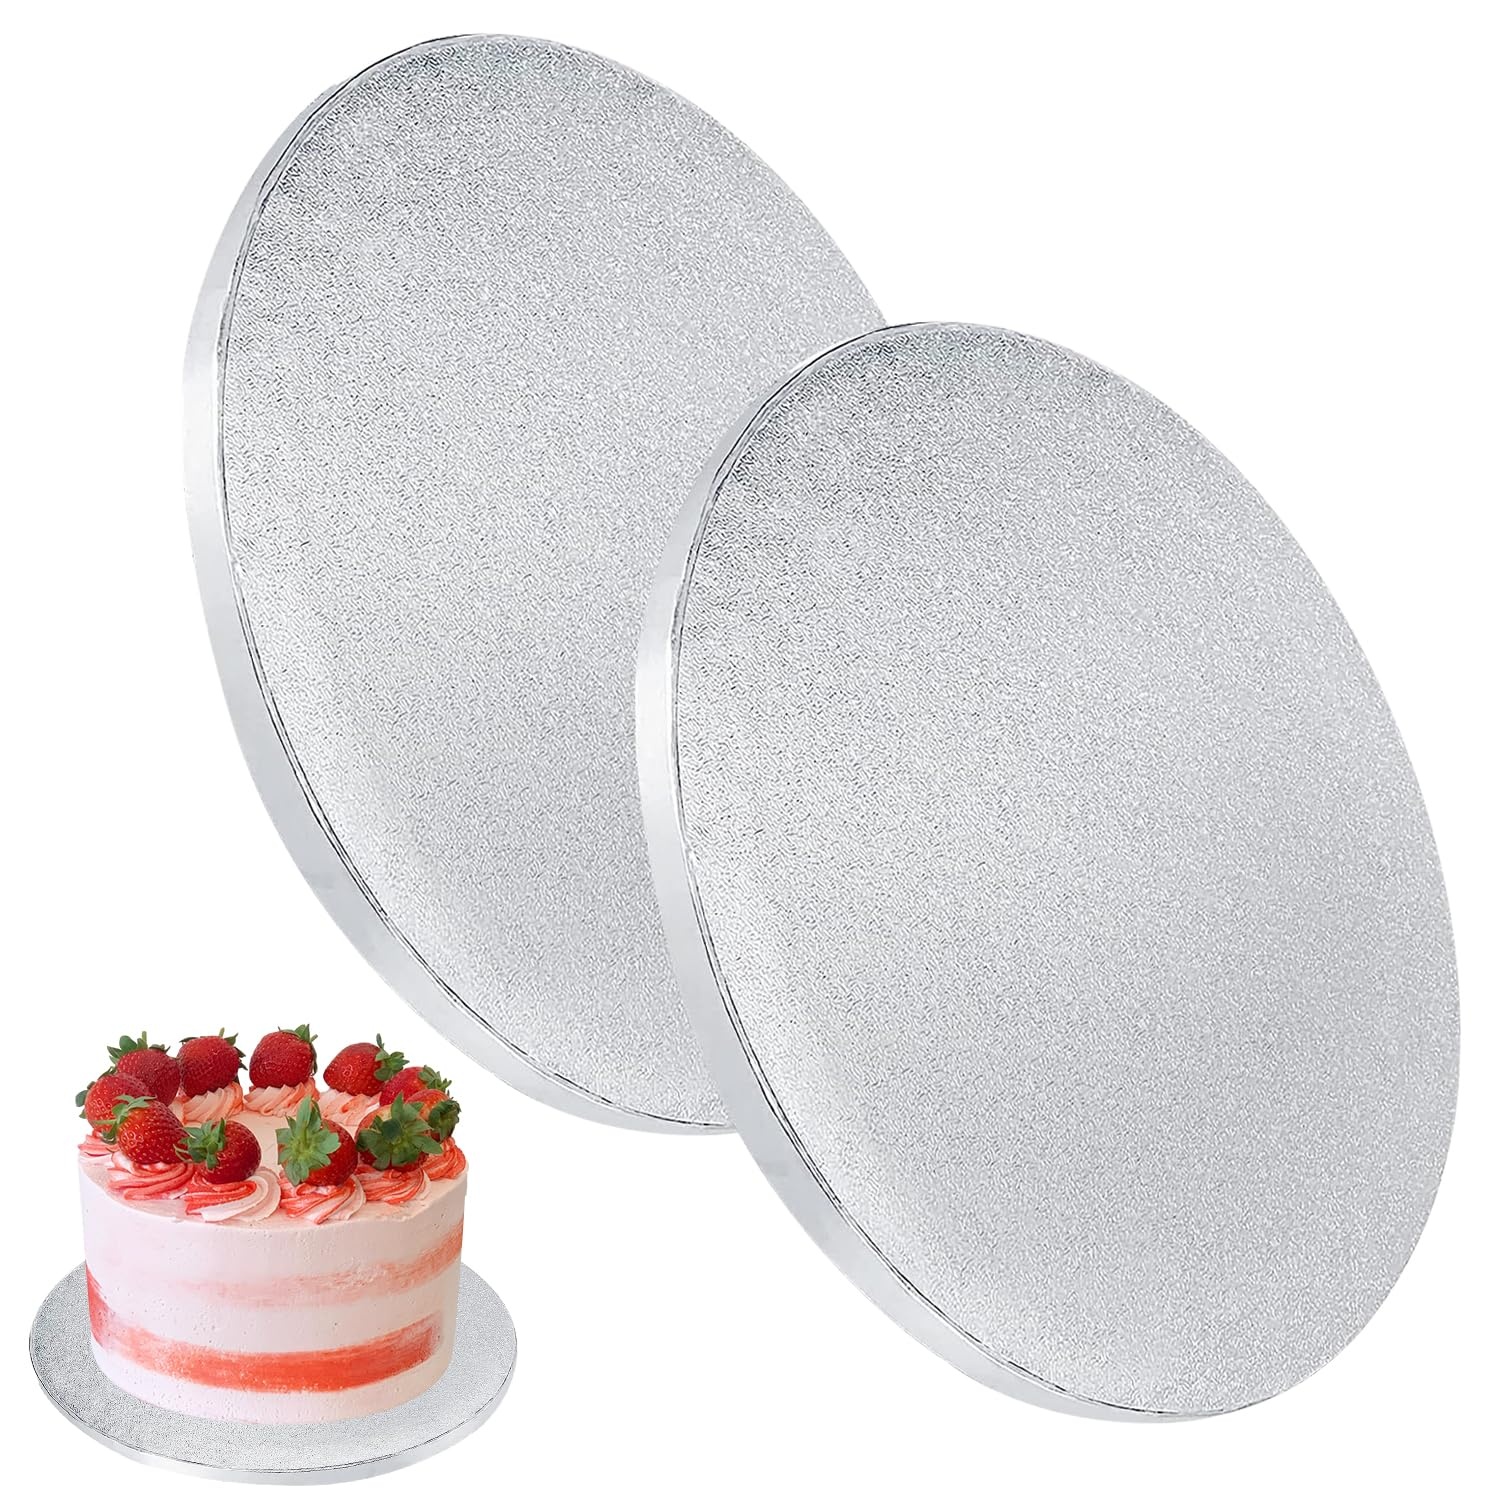 Silver Cake Boards, 2 Stück Und Torten Unterlage, Silver Foil Round Cake Circles, Cake Base Cardboard for Baking Cake 30cm/12 Inch